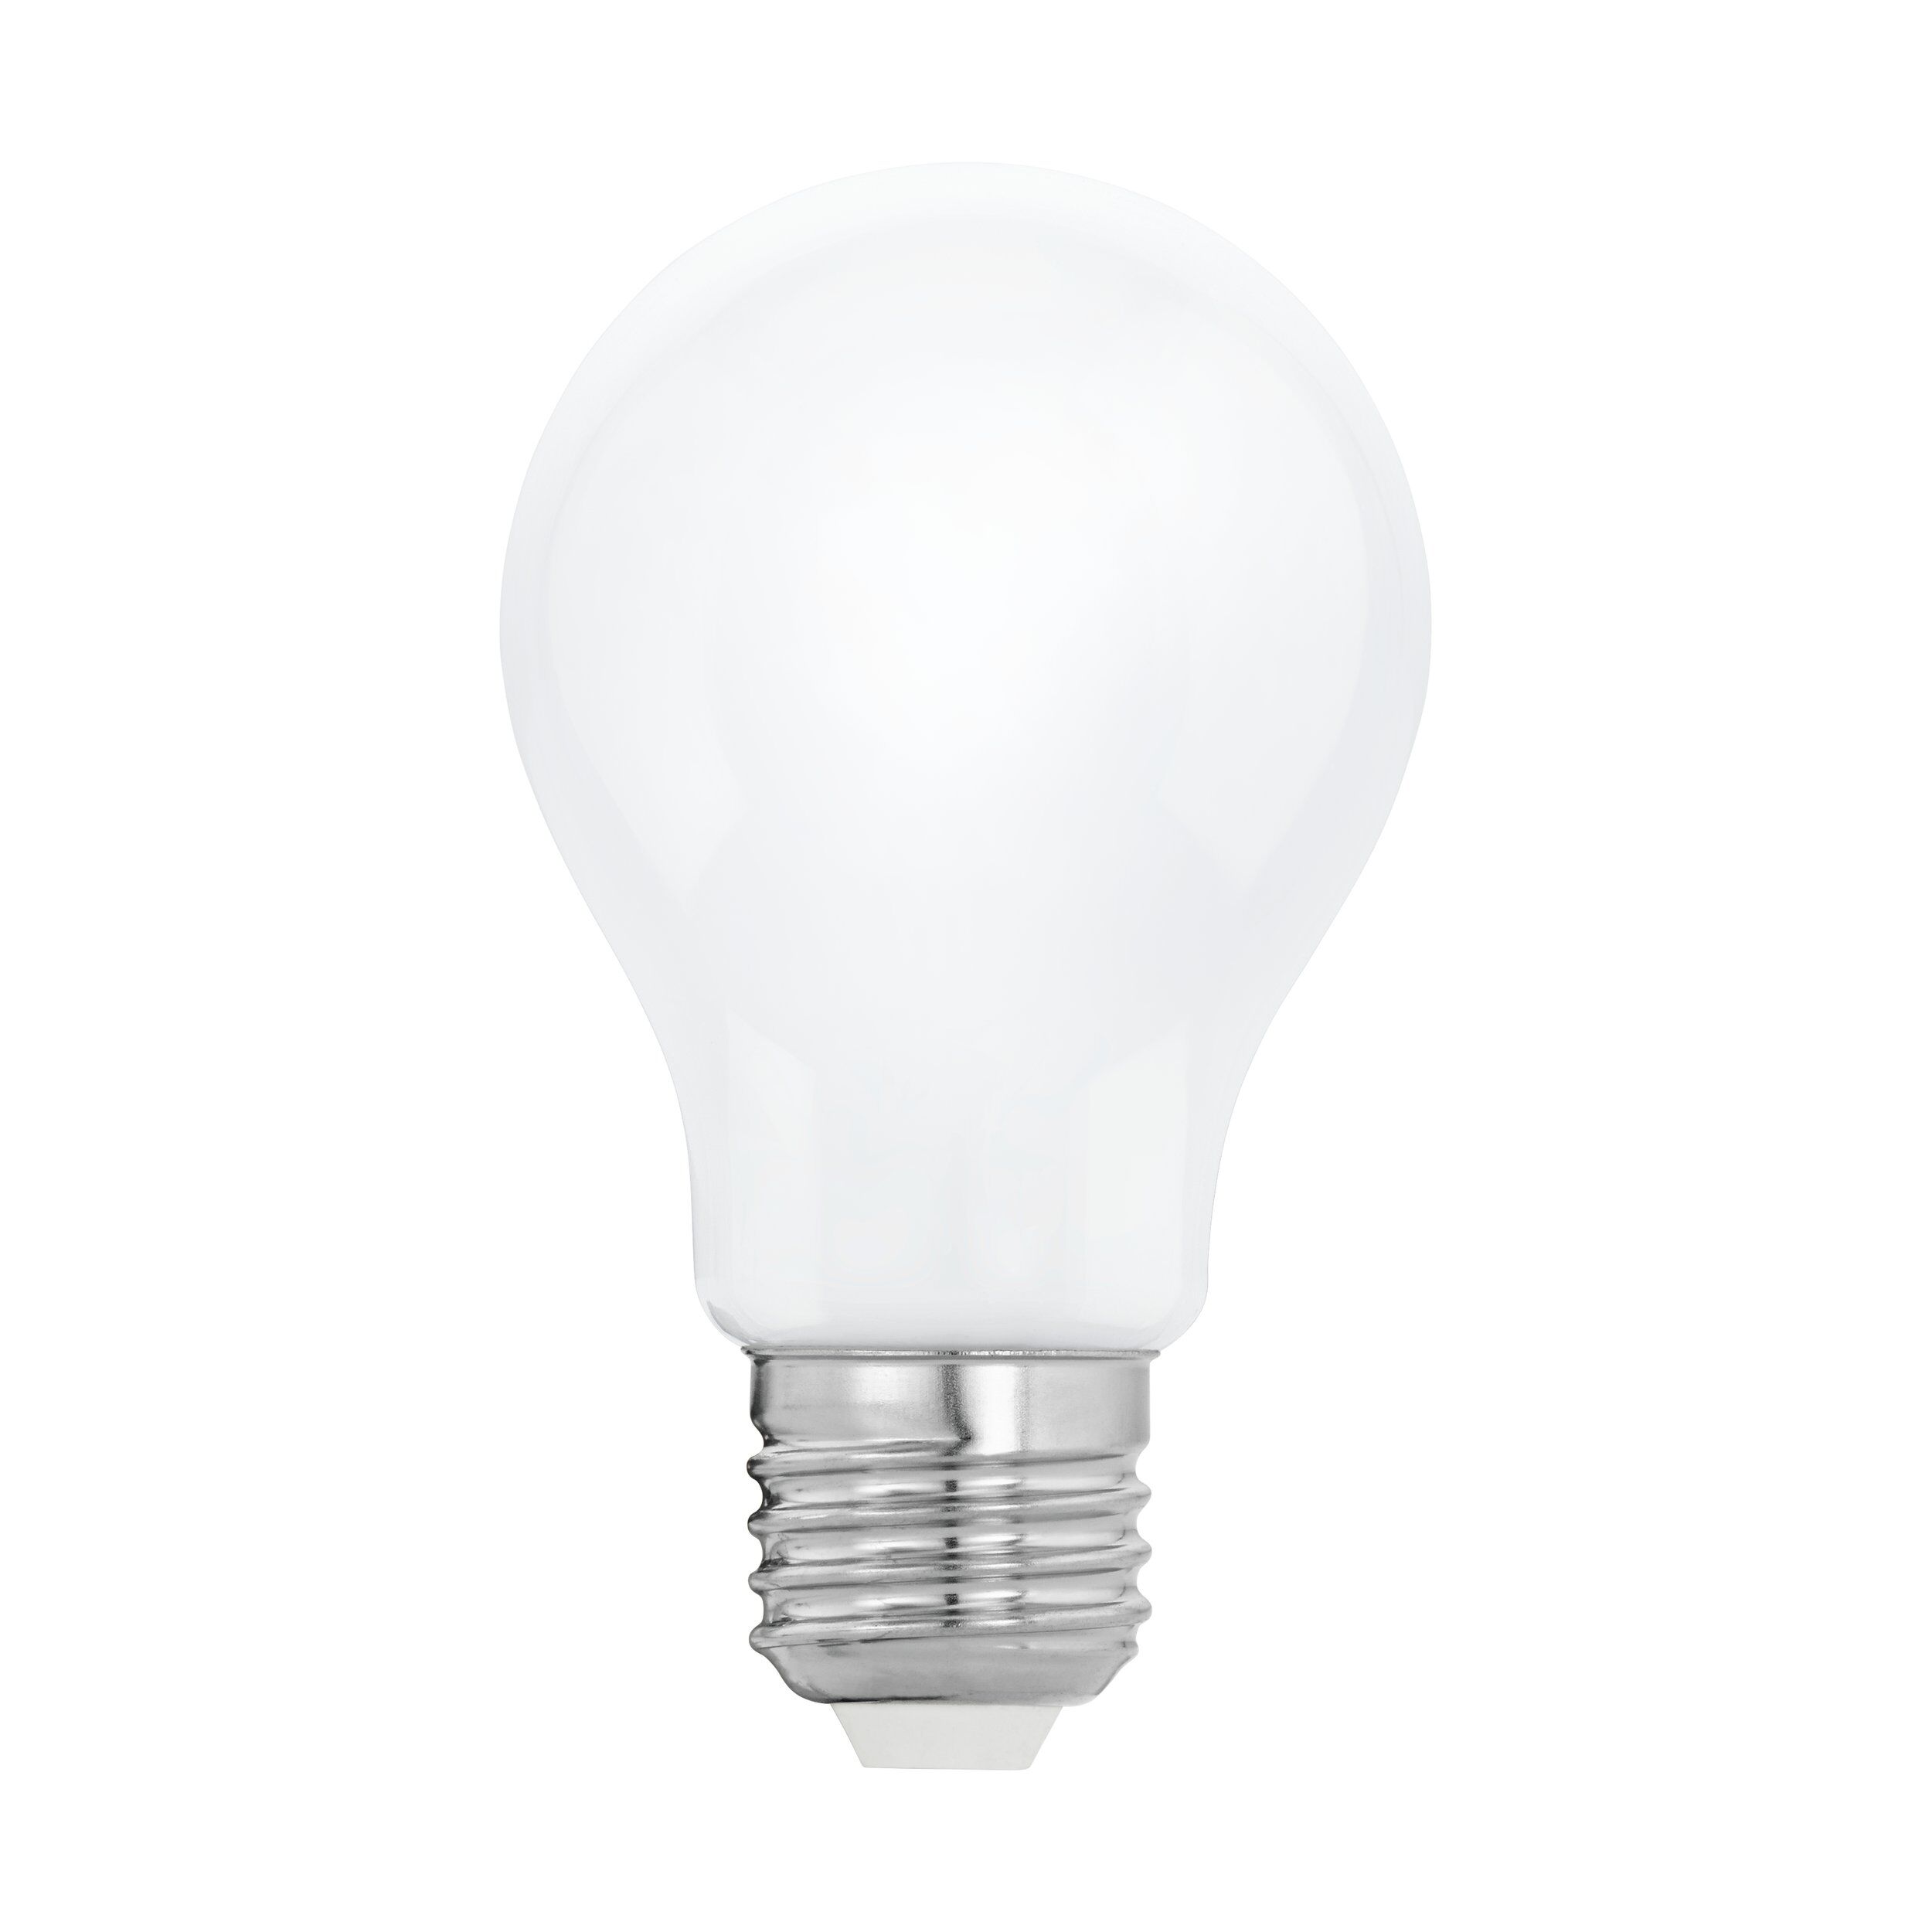 EGLO LED Lampe E27 12W warmweiß Leuchtmittel E27